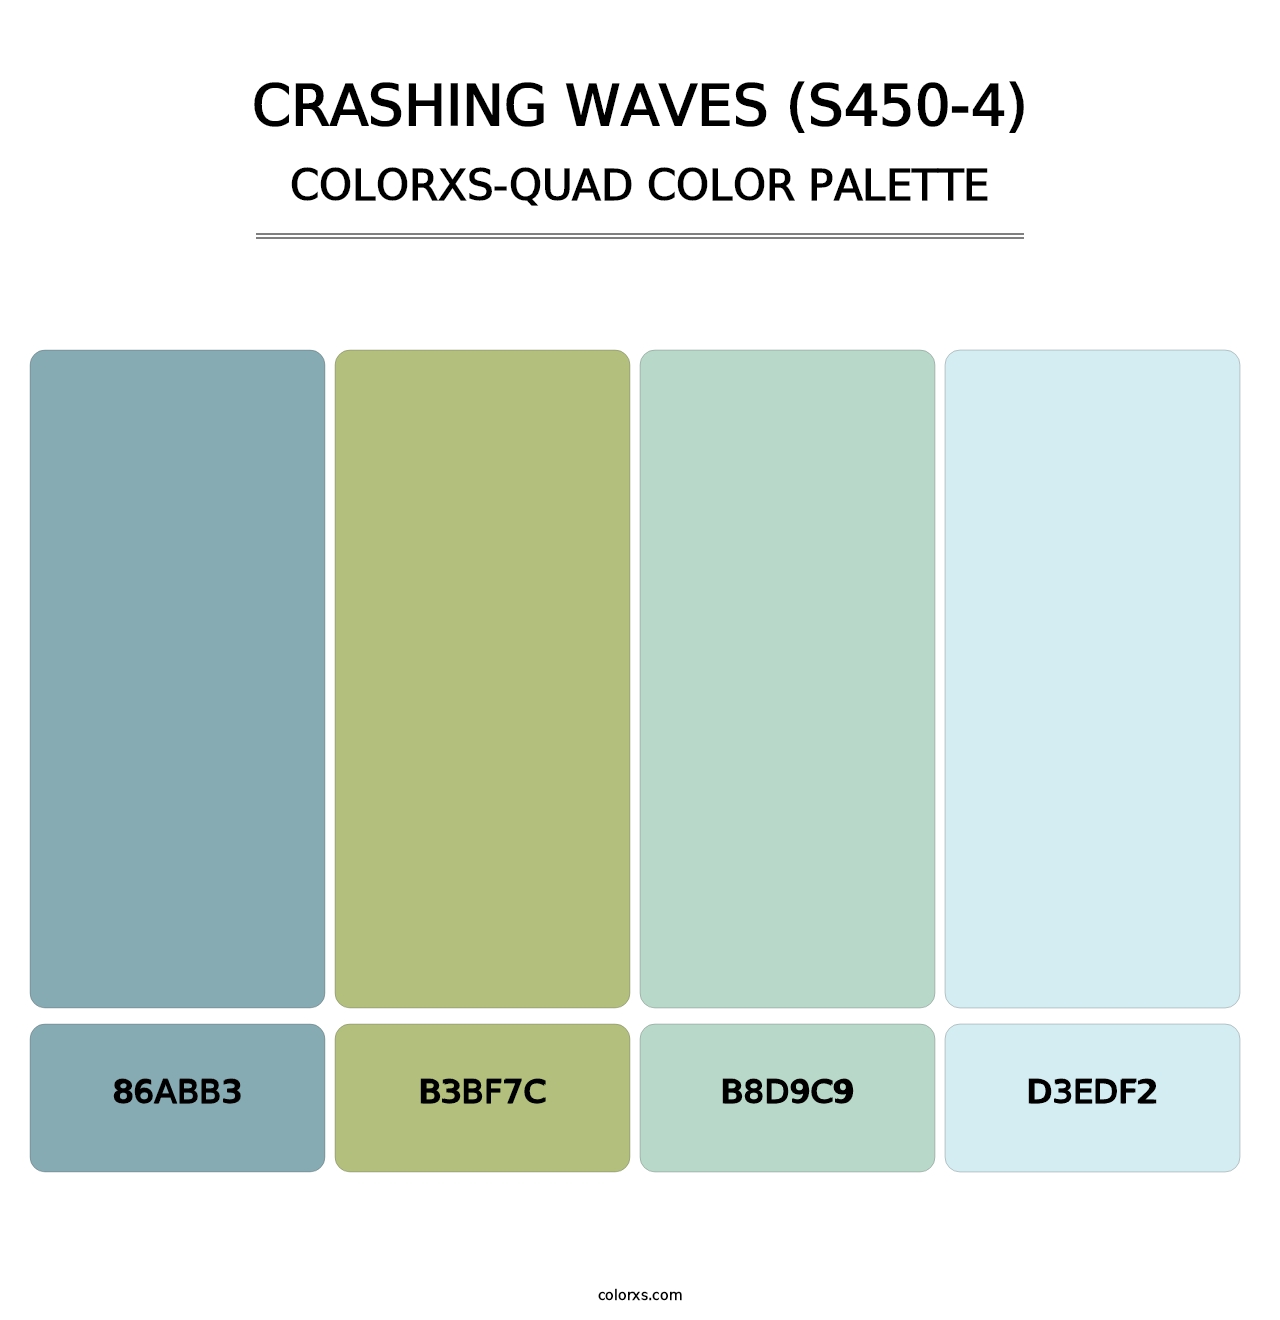 Crashing Waves (S450-4) - Colorxs Quad Palette